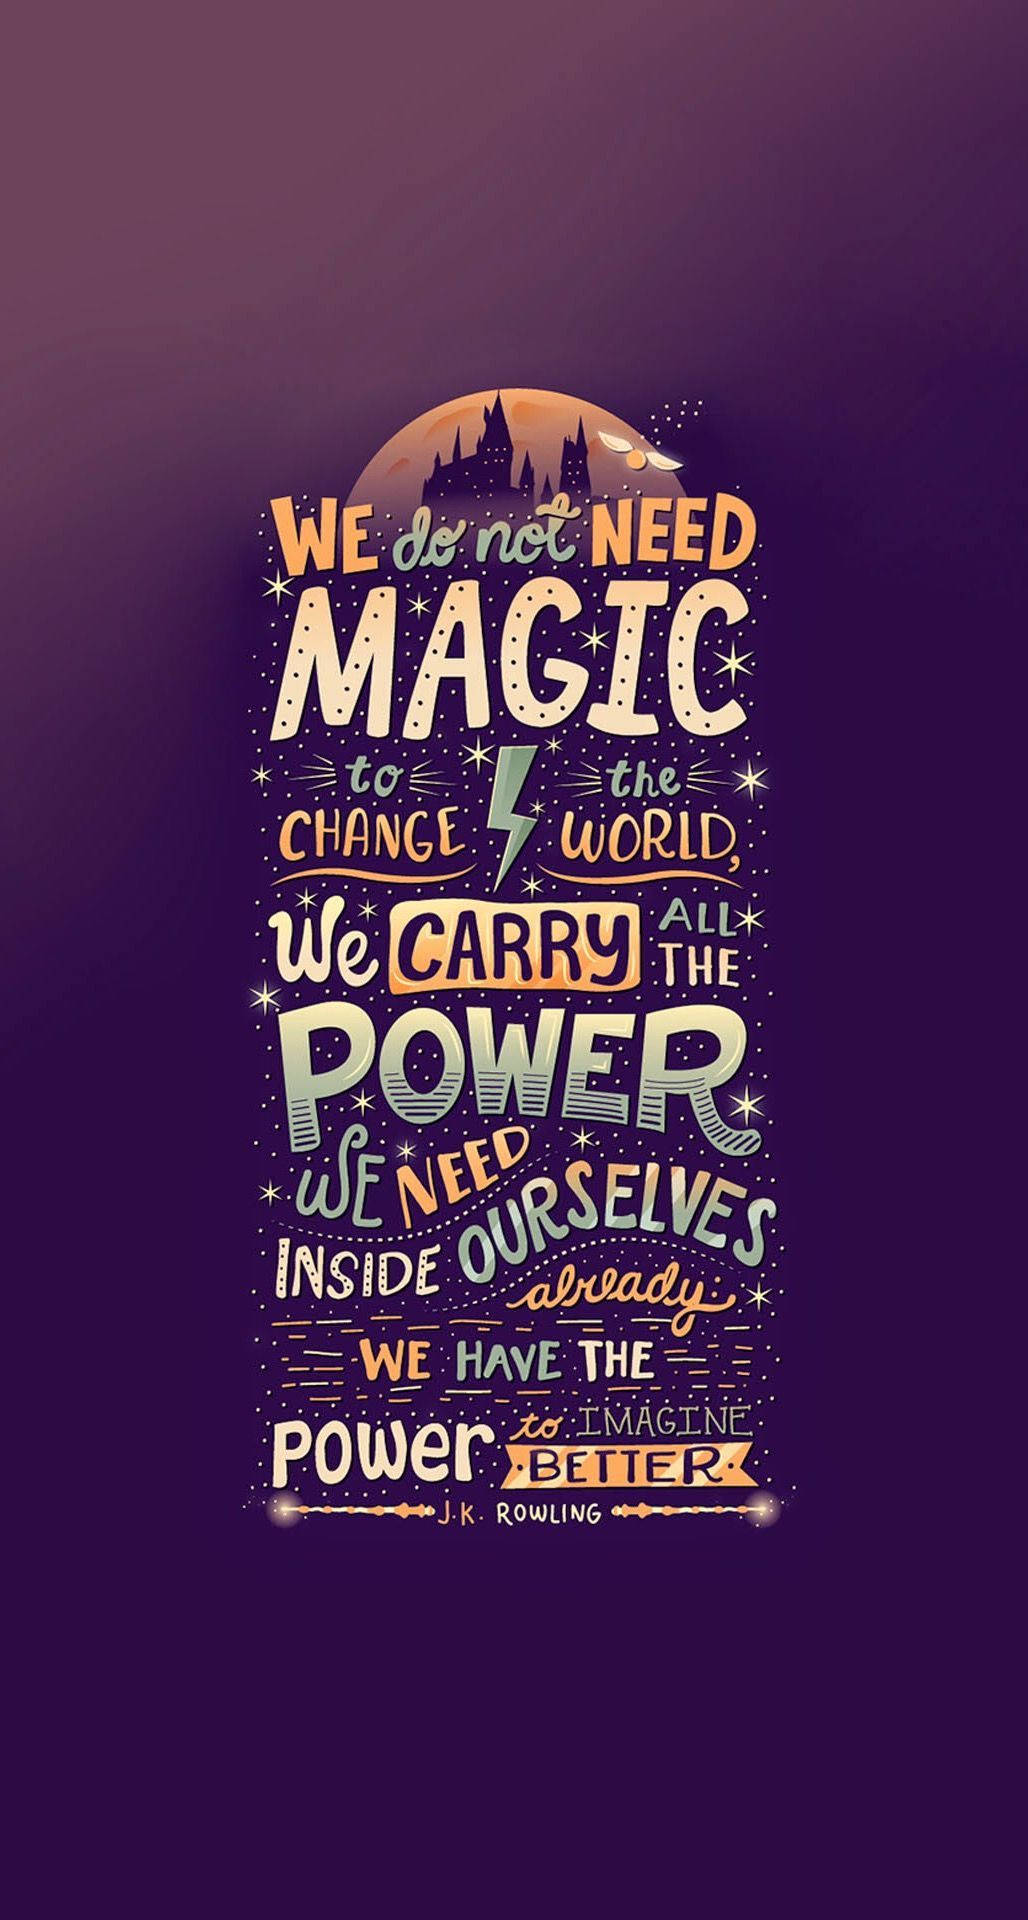 Tải hình nền Harry Potter với câu nói ý nghĩa sẽ truyền cảm hứng và động lực cho bạn mỗi khi mở máy tính. Những câu nói đầy ý nghĩa từ các nhân vật của Harry Potter sẽ giúp bạn cảm thấy thuận lợi và tiếp thêm sức mạnh để vượt qua những thử thách trong cuộc sống.